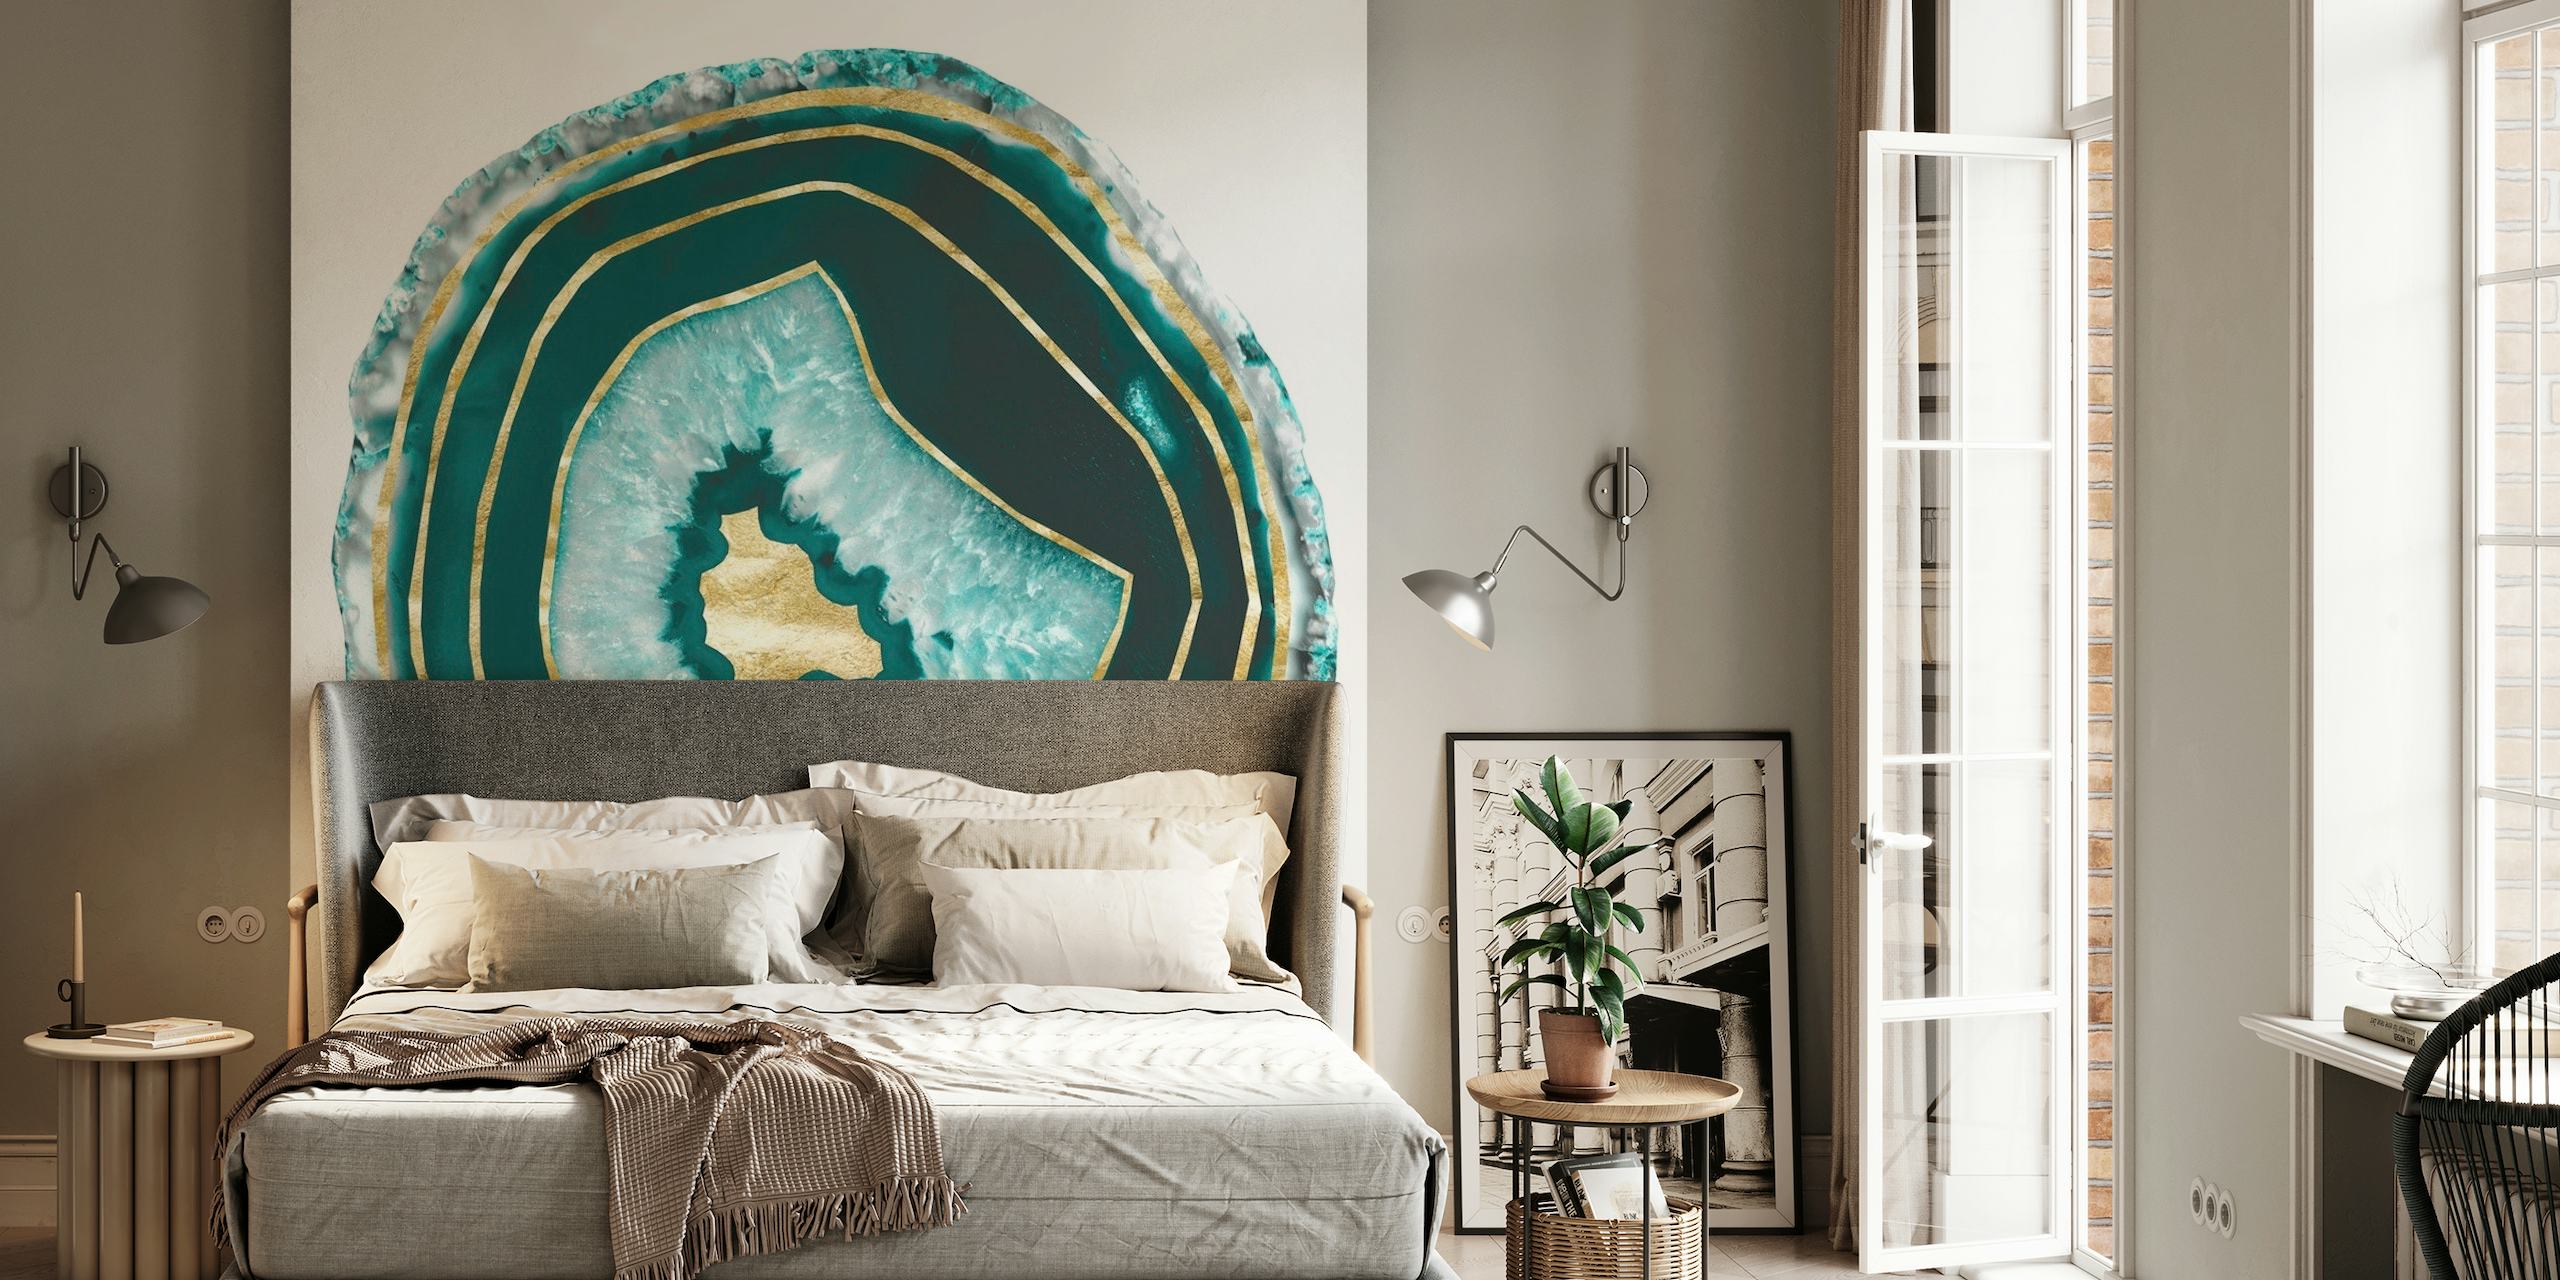 Elegantes Wandgemälde aus Mondstein-Achat mit Goldfoliendetails für eine luxuriöse Inneneinrichtung